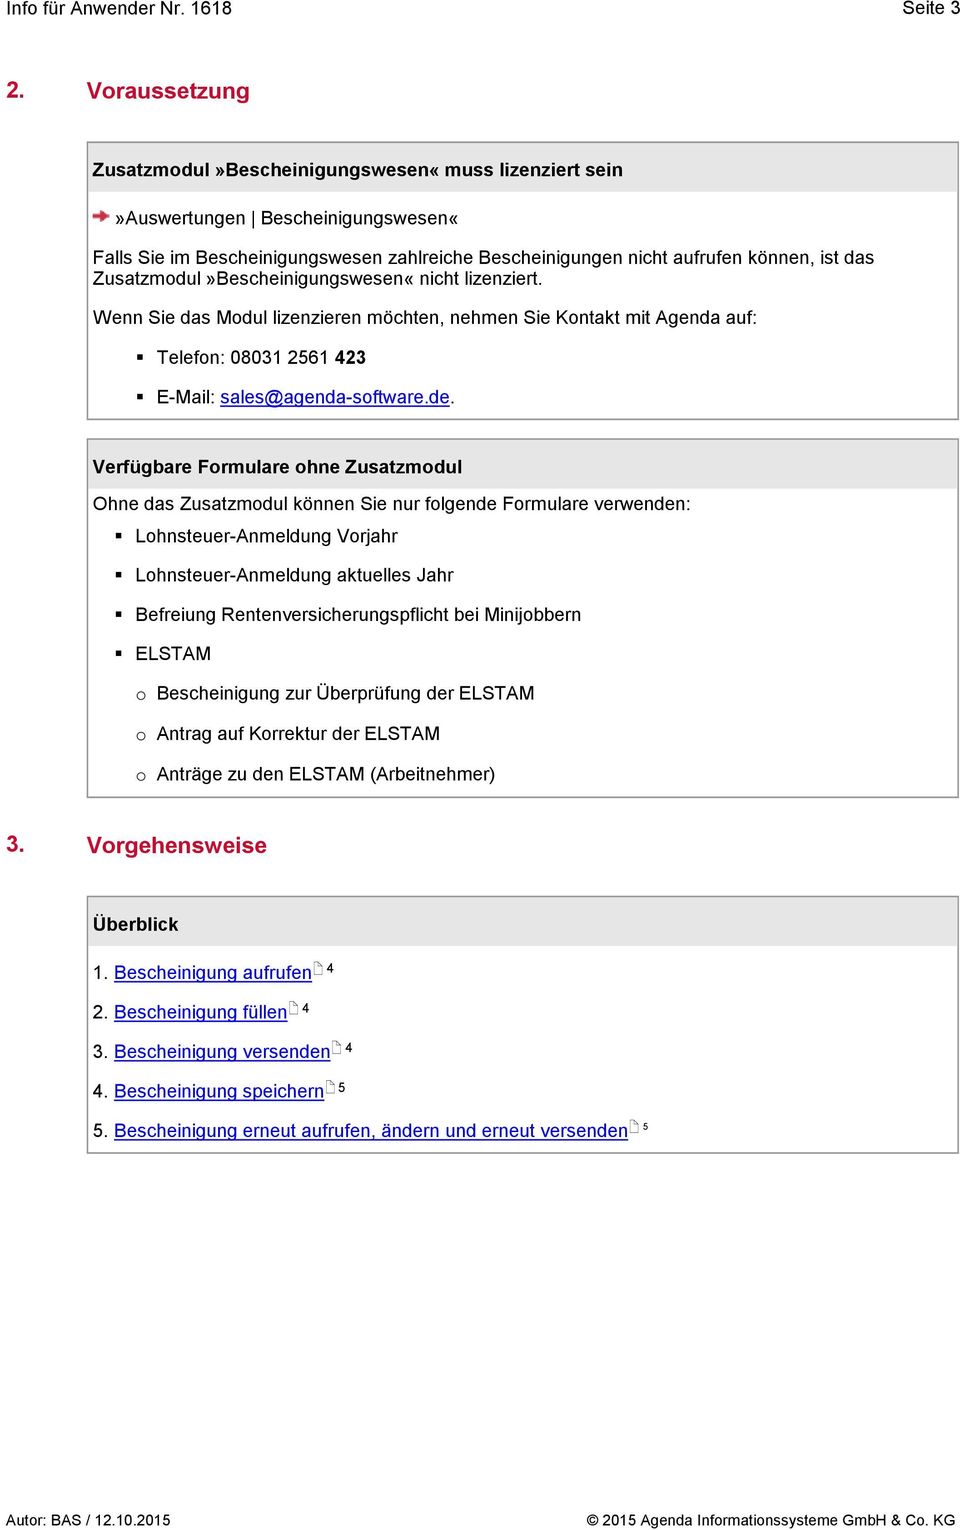 Zusatzmodul»Bescheinigungswesen«nicht lizenziert. Wenn Sie das Modul lizenzieren möchten, nehmen Sie Kontakt mit Agenda auf: Telefon: 08031 21 23 E-Mail: sales@agenda-software.de.